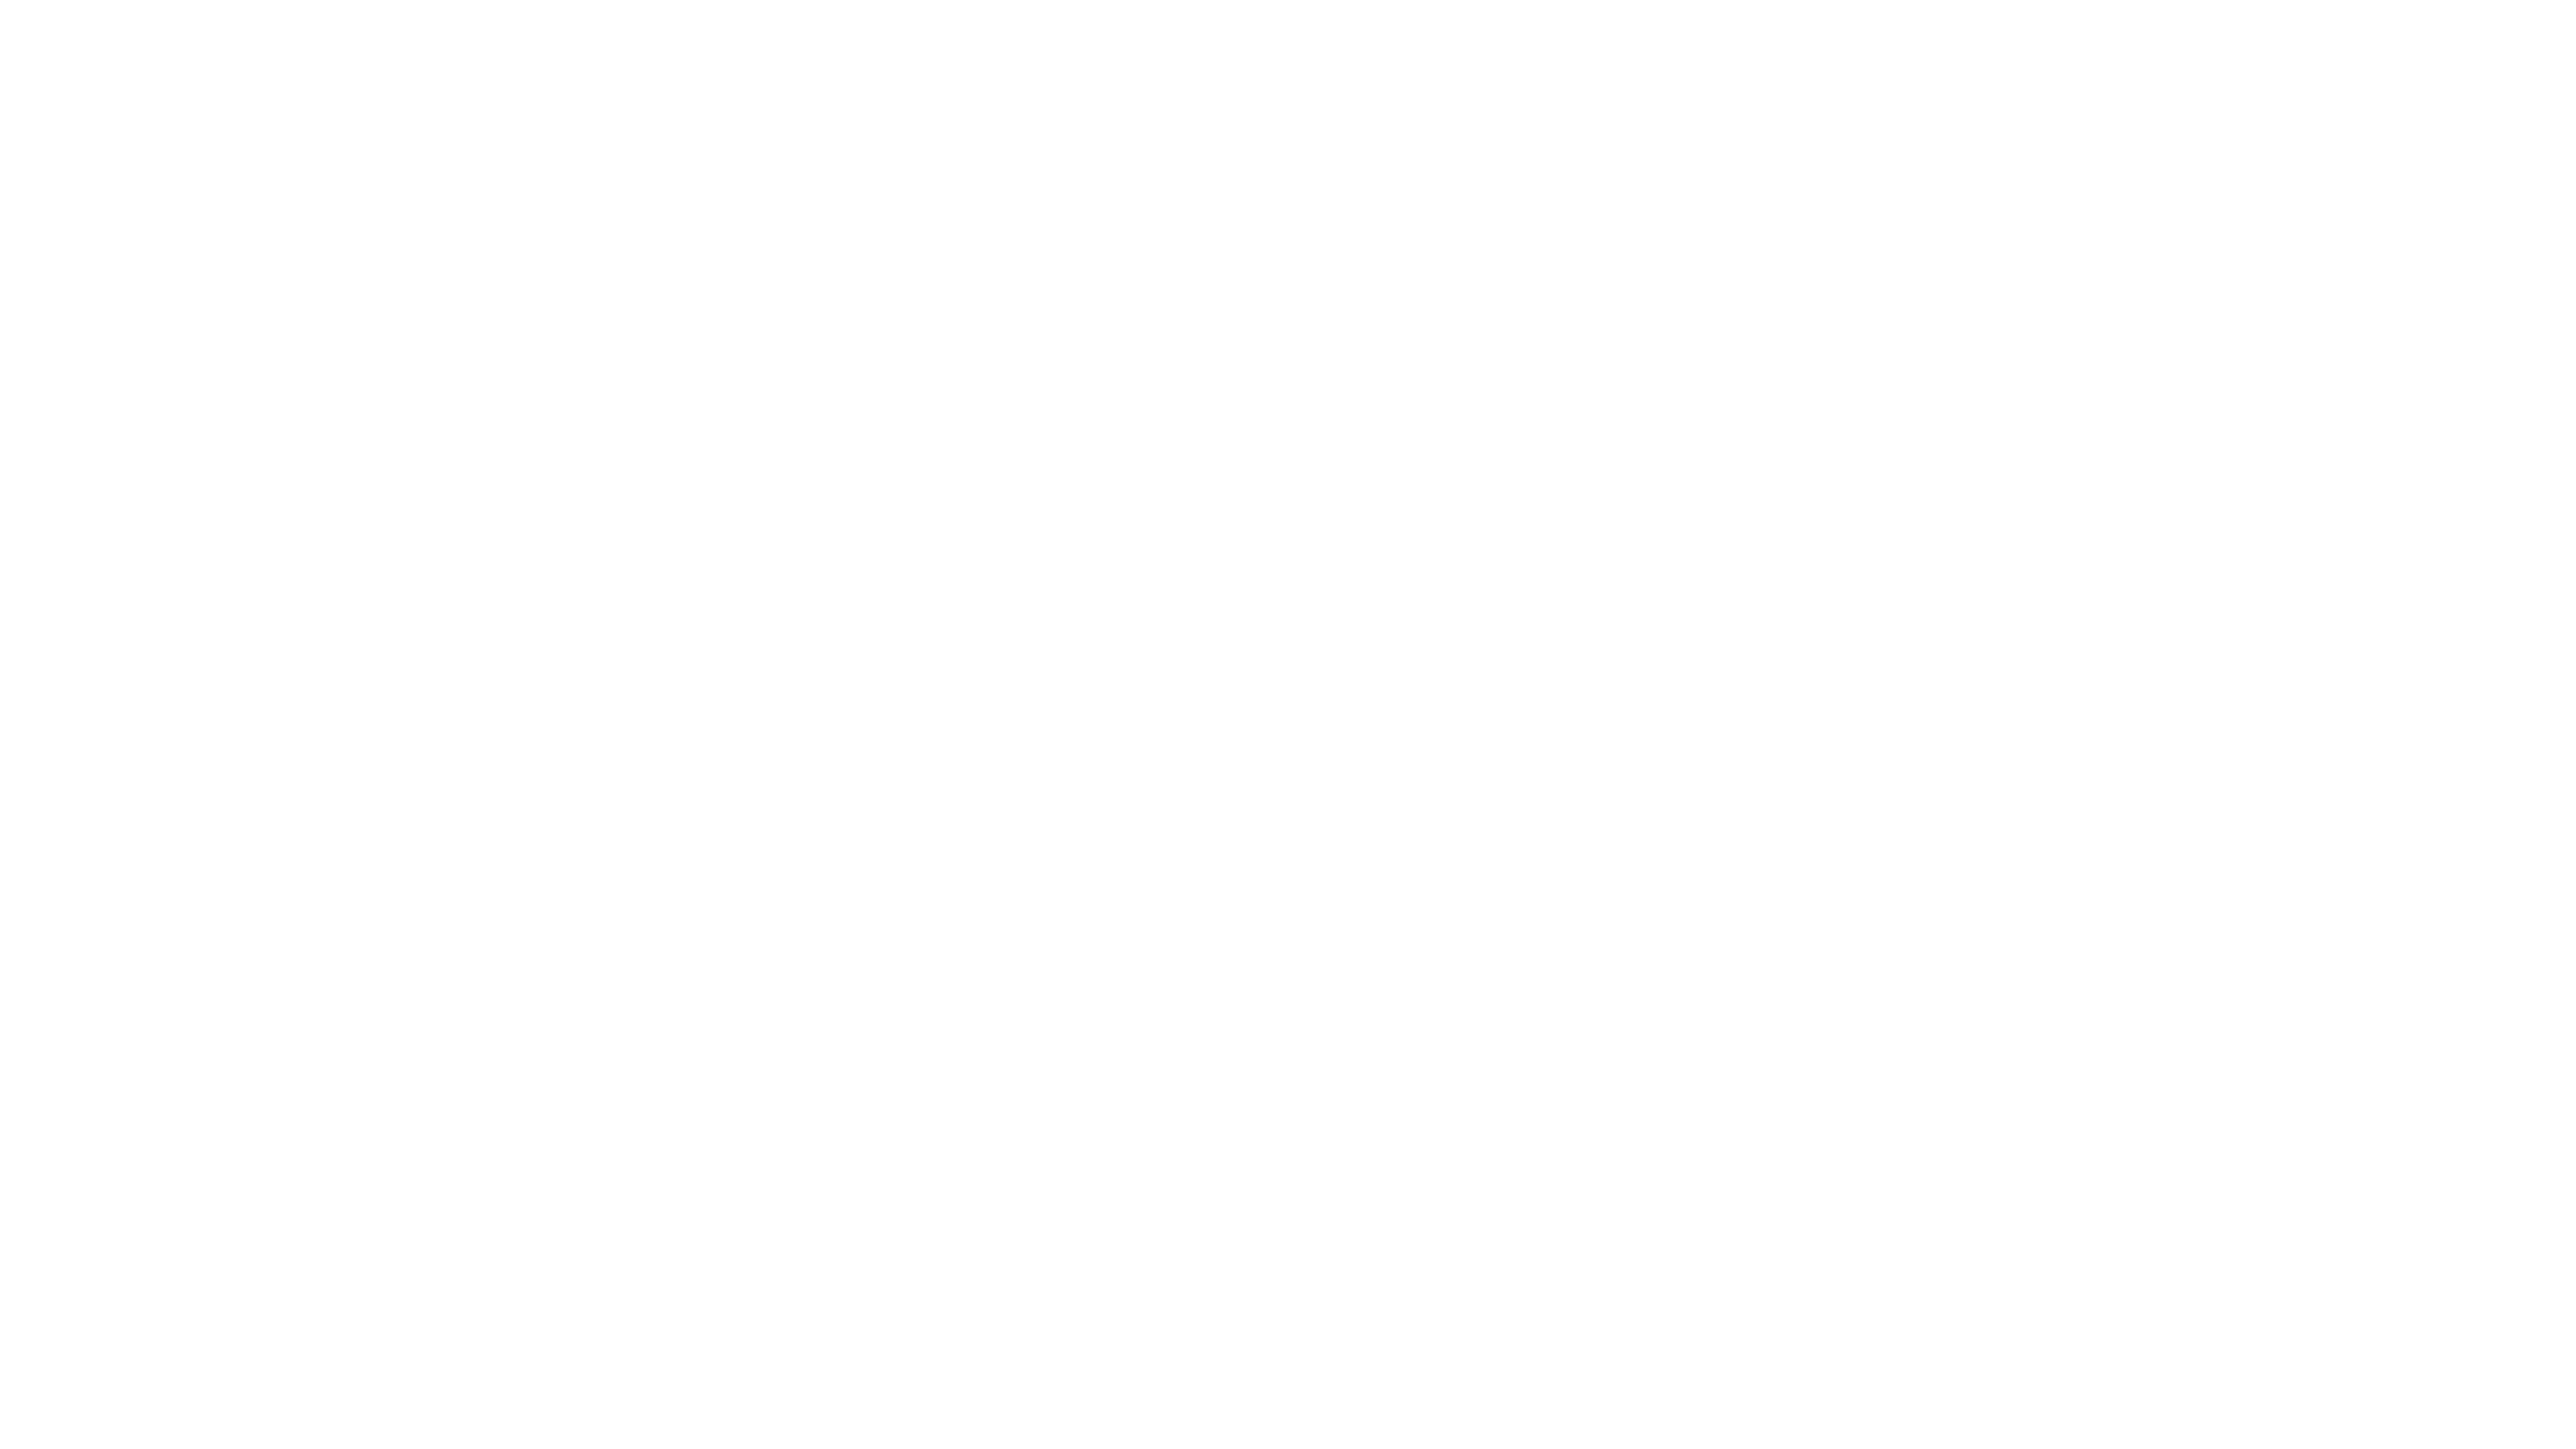 Gezinsfoto groepsfoto met zwarte achtergrond 8pose